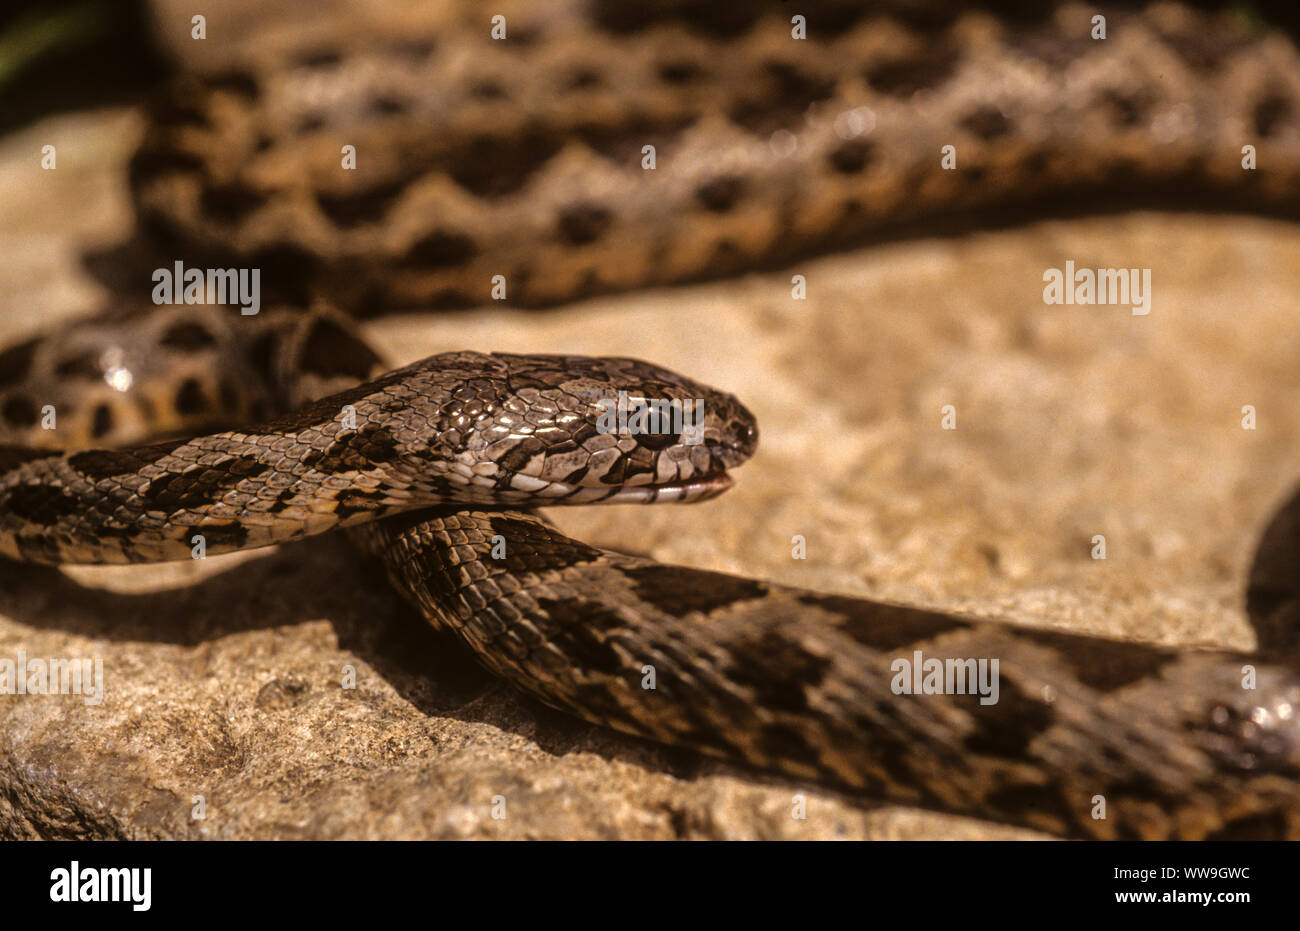 Coin-marked snake (Hemorrhois nummifer) Stock Photo